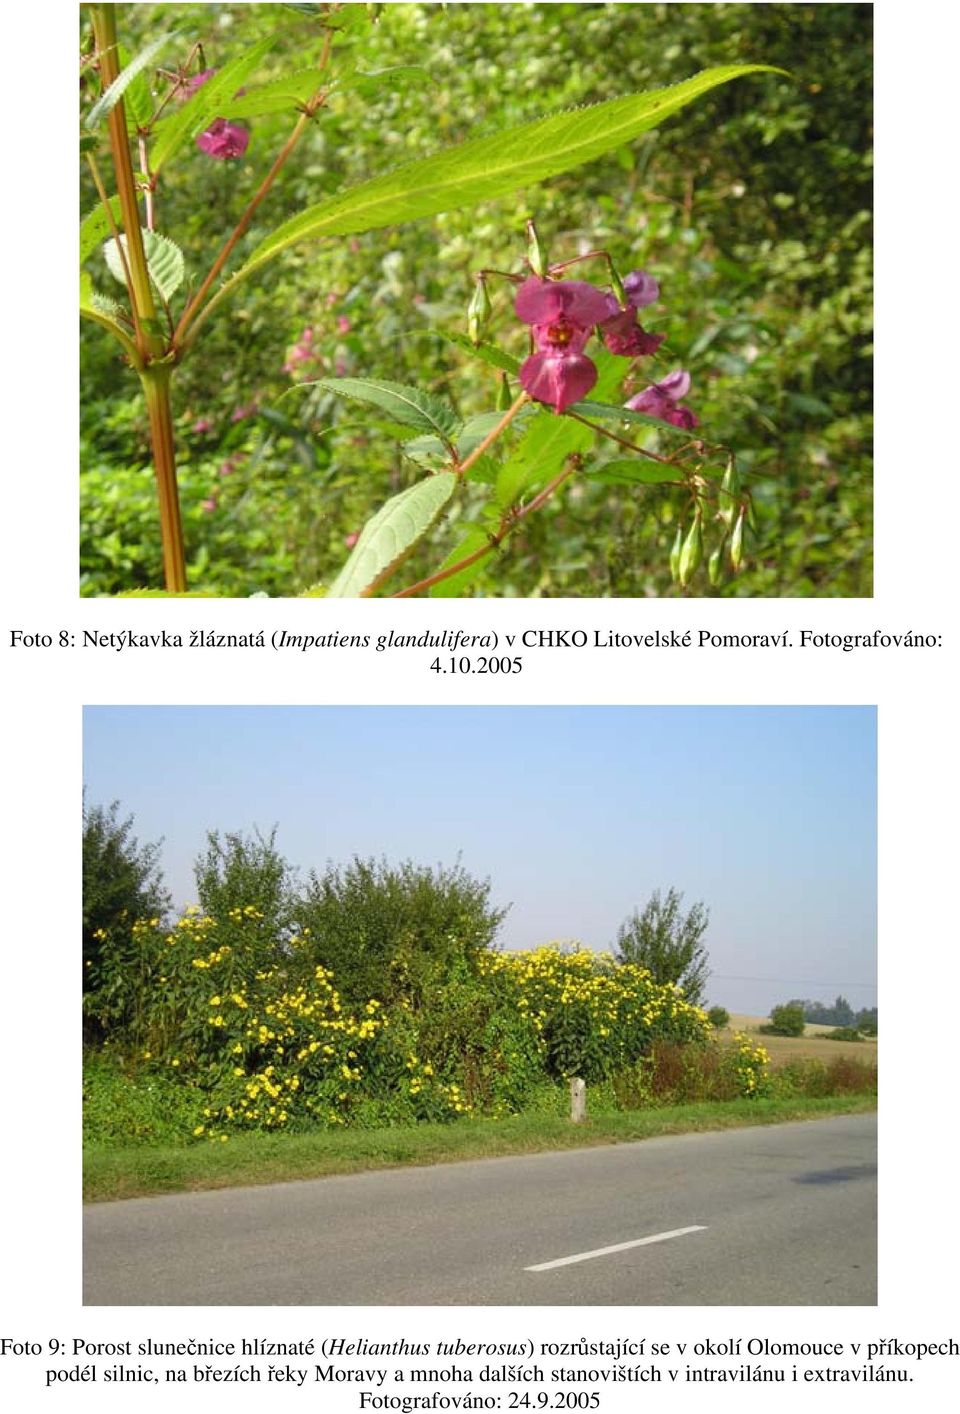 2005 Foto 9: Porost slunečnice hlíznaté (Helianthus tuberosus) rozrůstající se v